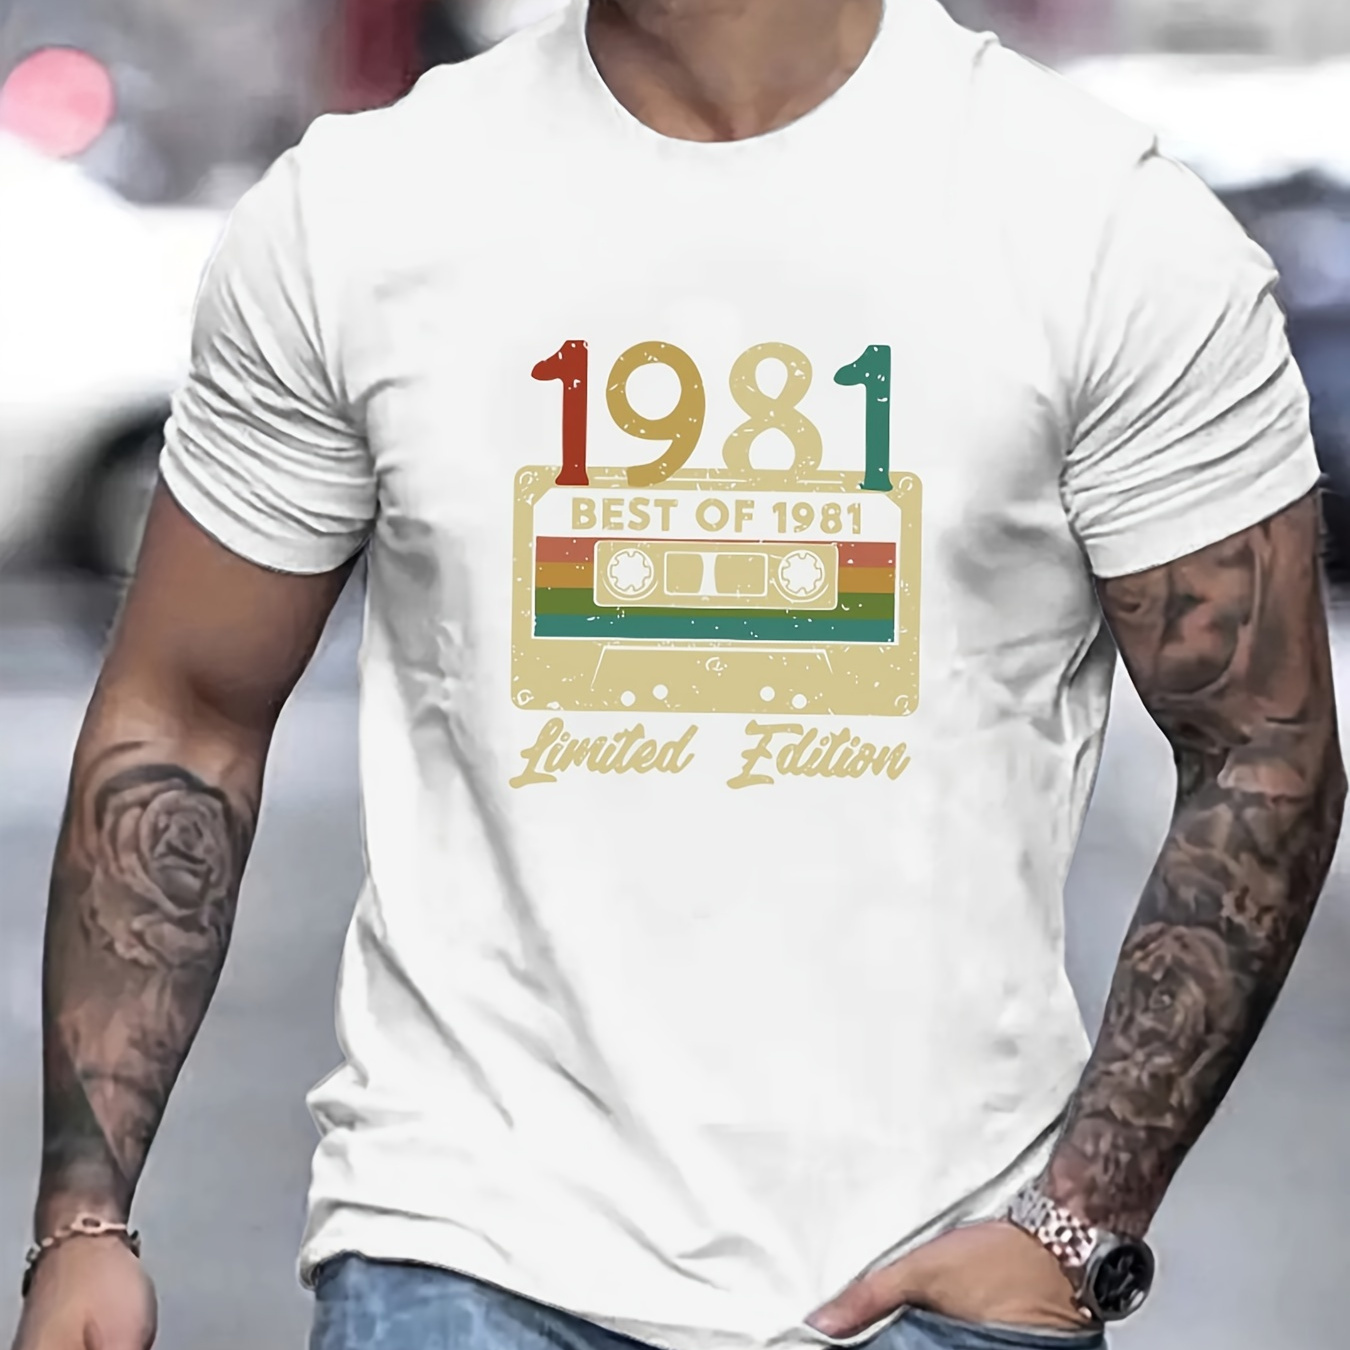 

T-shirt imprimé 1981, T-shirts pour hommes, T-shirt décontracté à manches courtes pour l'été